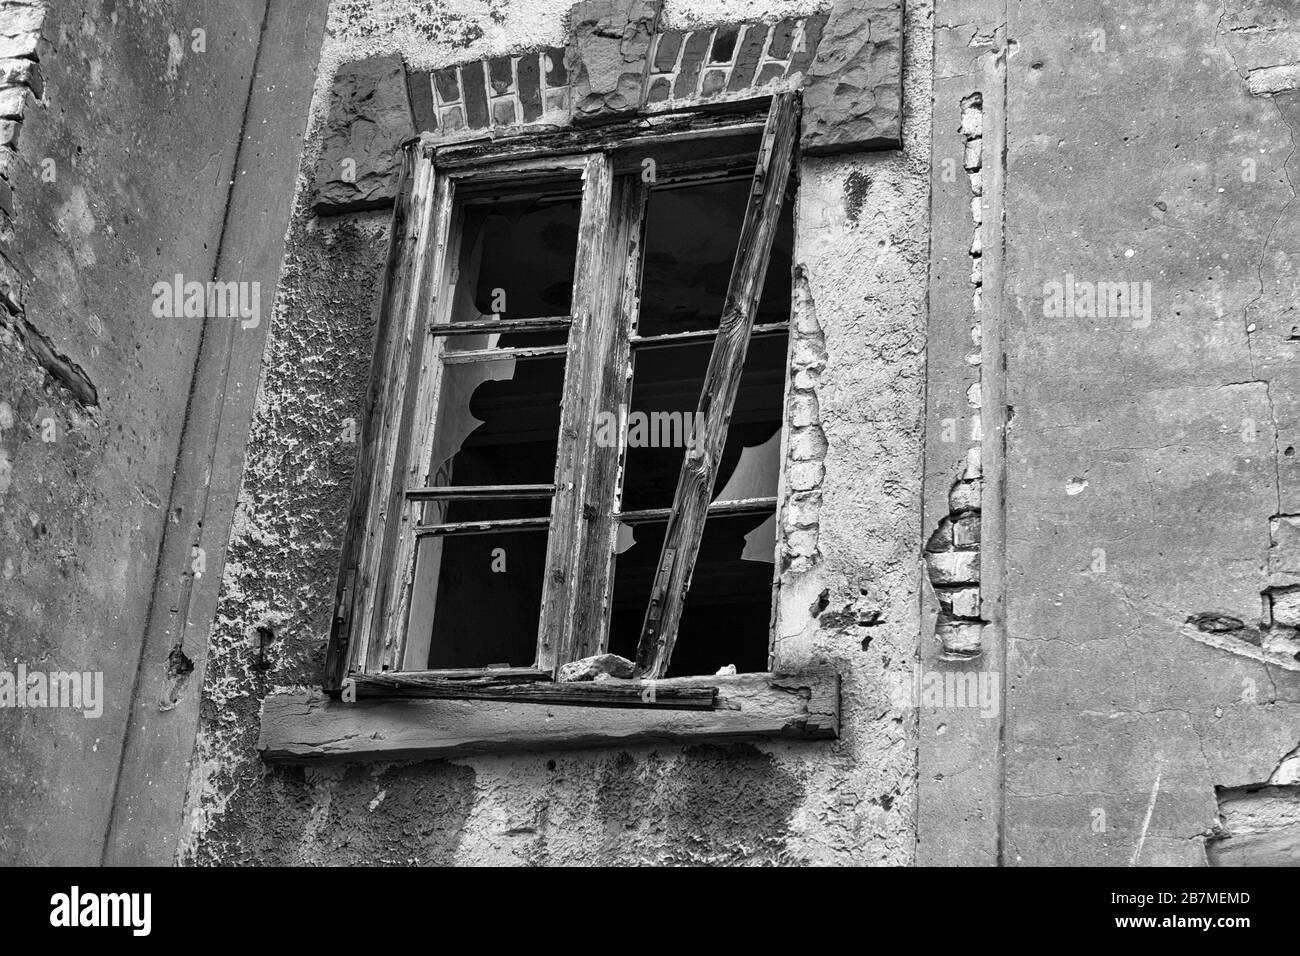 Dettaglio di una finestra spezzata in un edificio abbandonato nel Vecchio Porto di Trieste, Friuli-Venezia-Giulia, Italia: Versione in bianco e nero Foto Stock